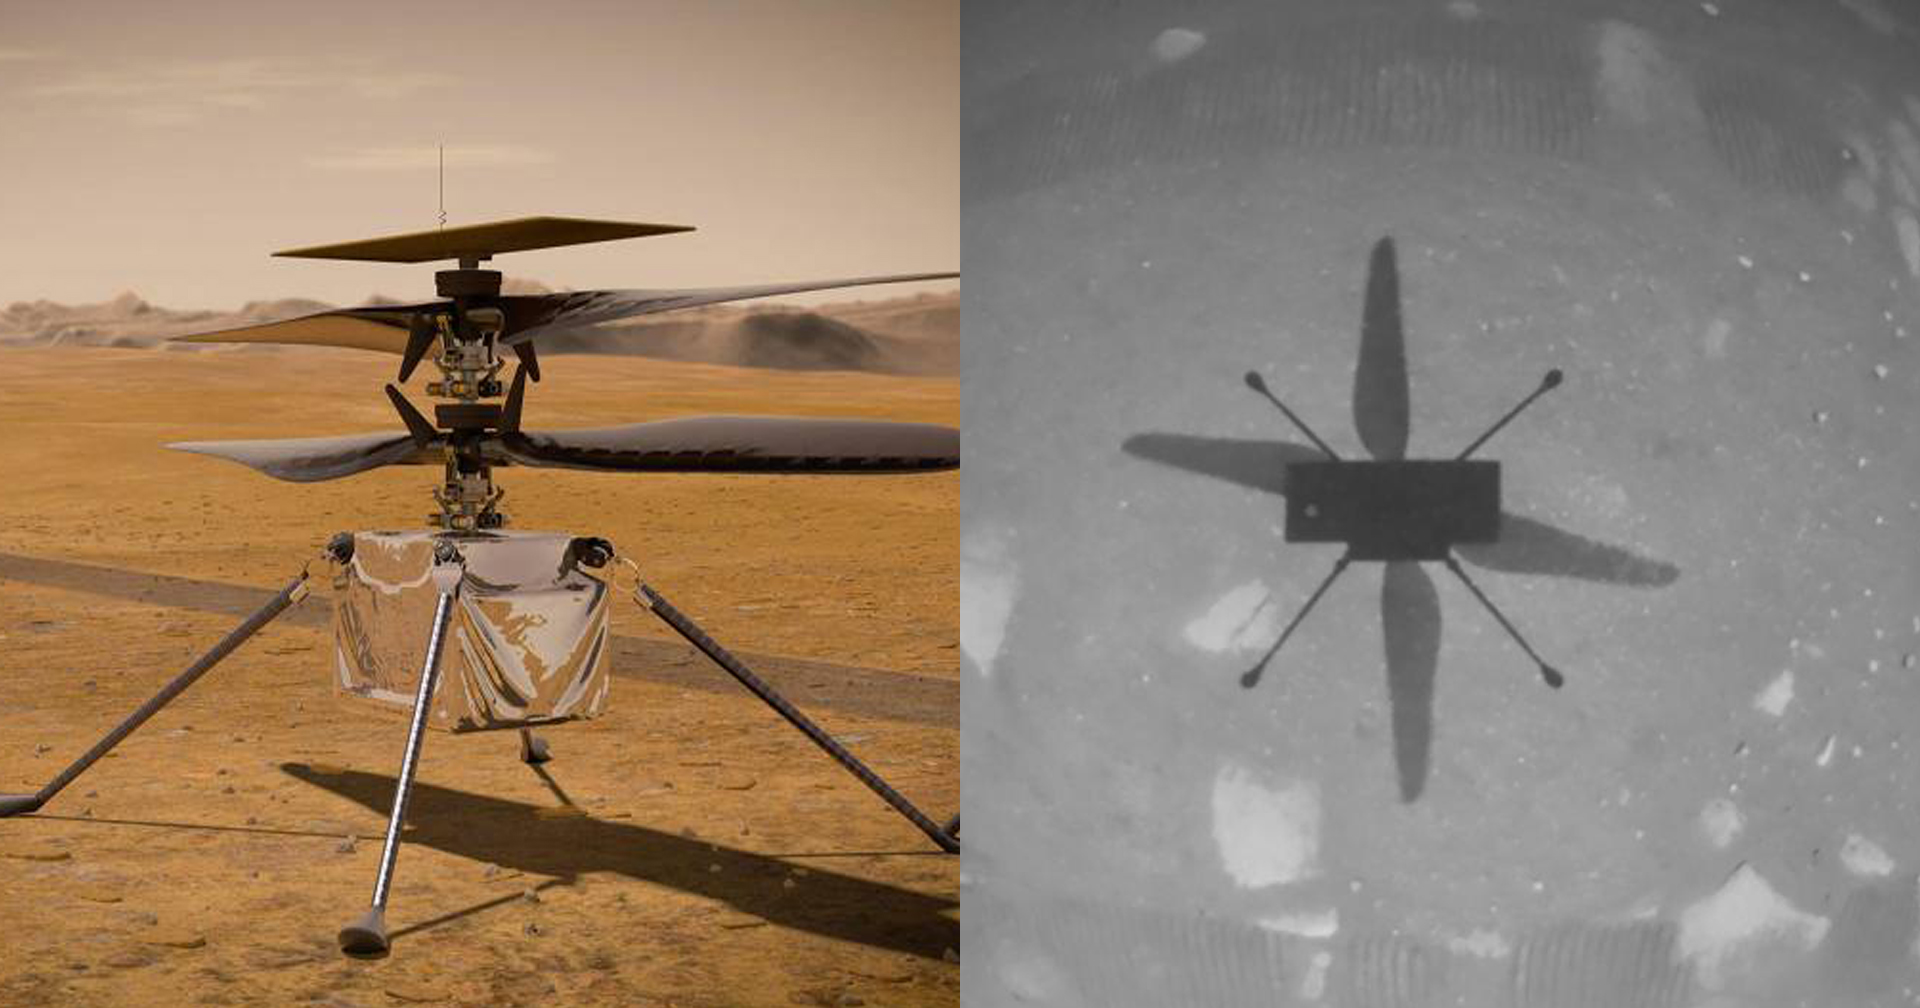 นาทีประวัติศาสตร์! NASA ประสบความสำเร็จในการบินเฮลิคอปเตอร์สำรวจดาวอังคาร